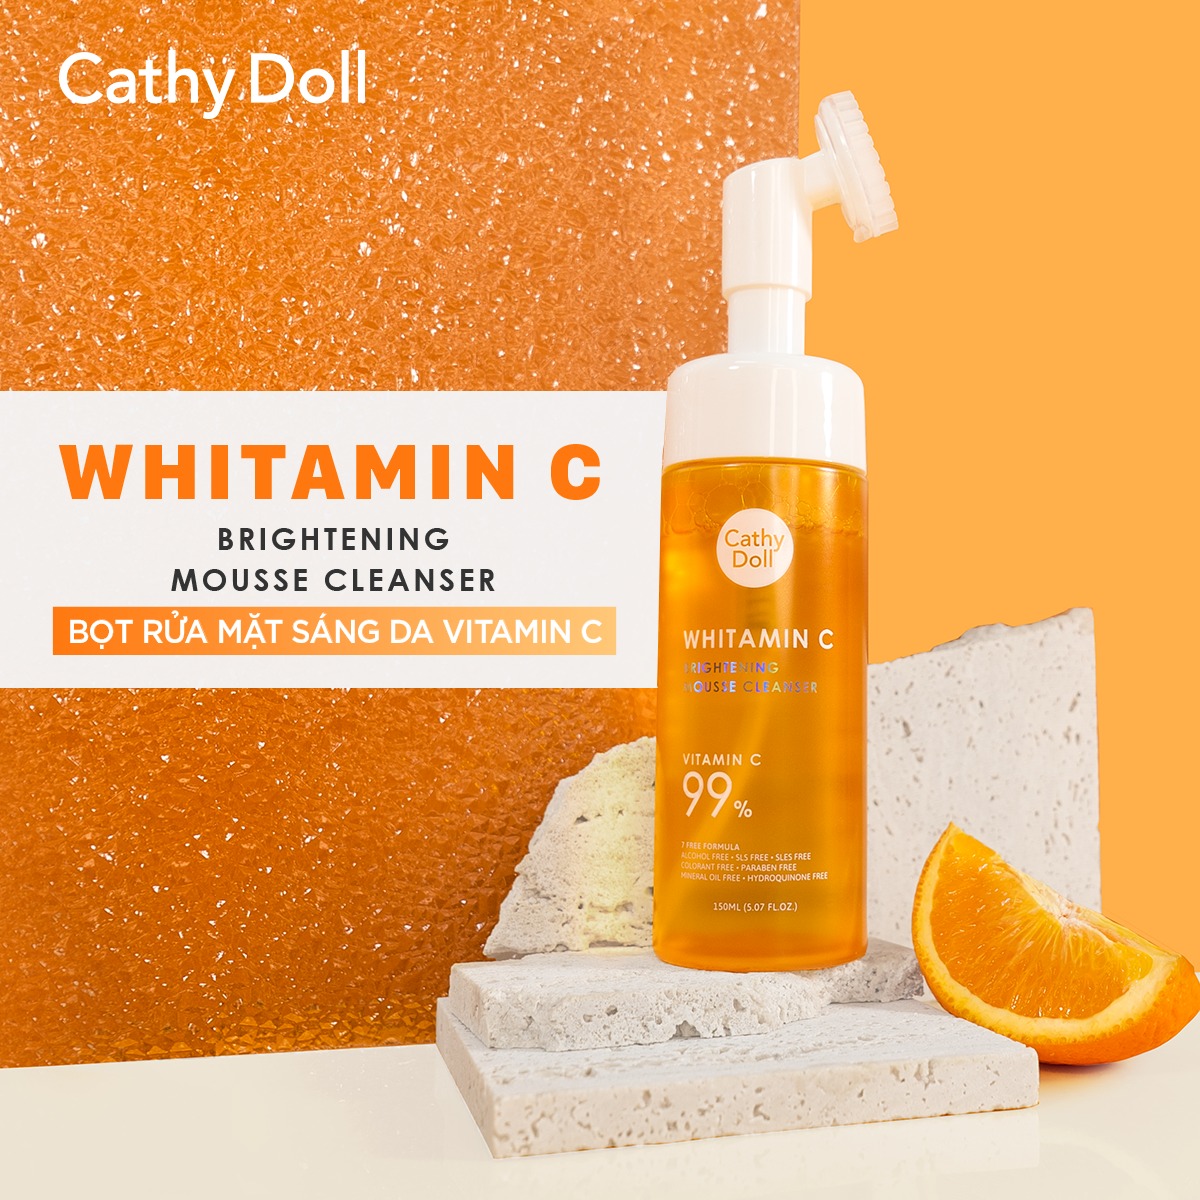 Bọt Rửa Mặt Cathy Doll Vitamin C Dưỡng Sáng, Mờ Thâm 150ml